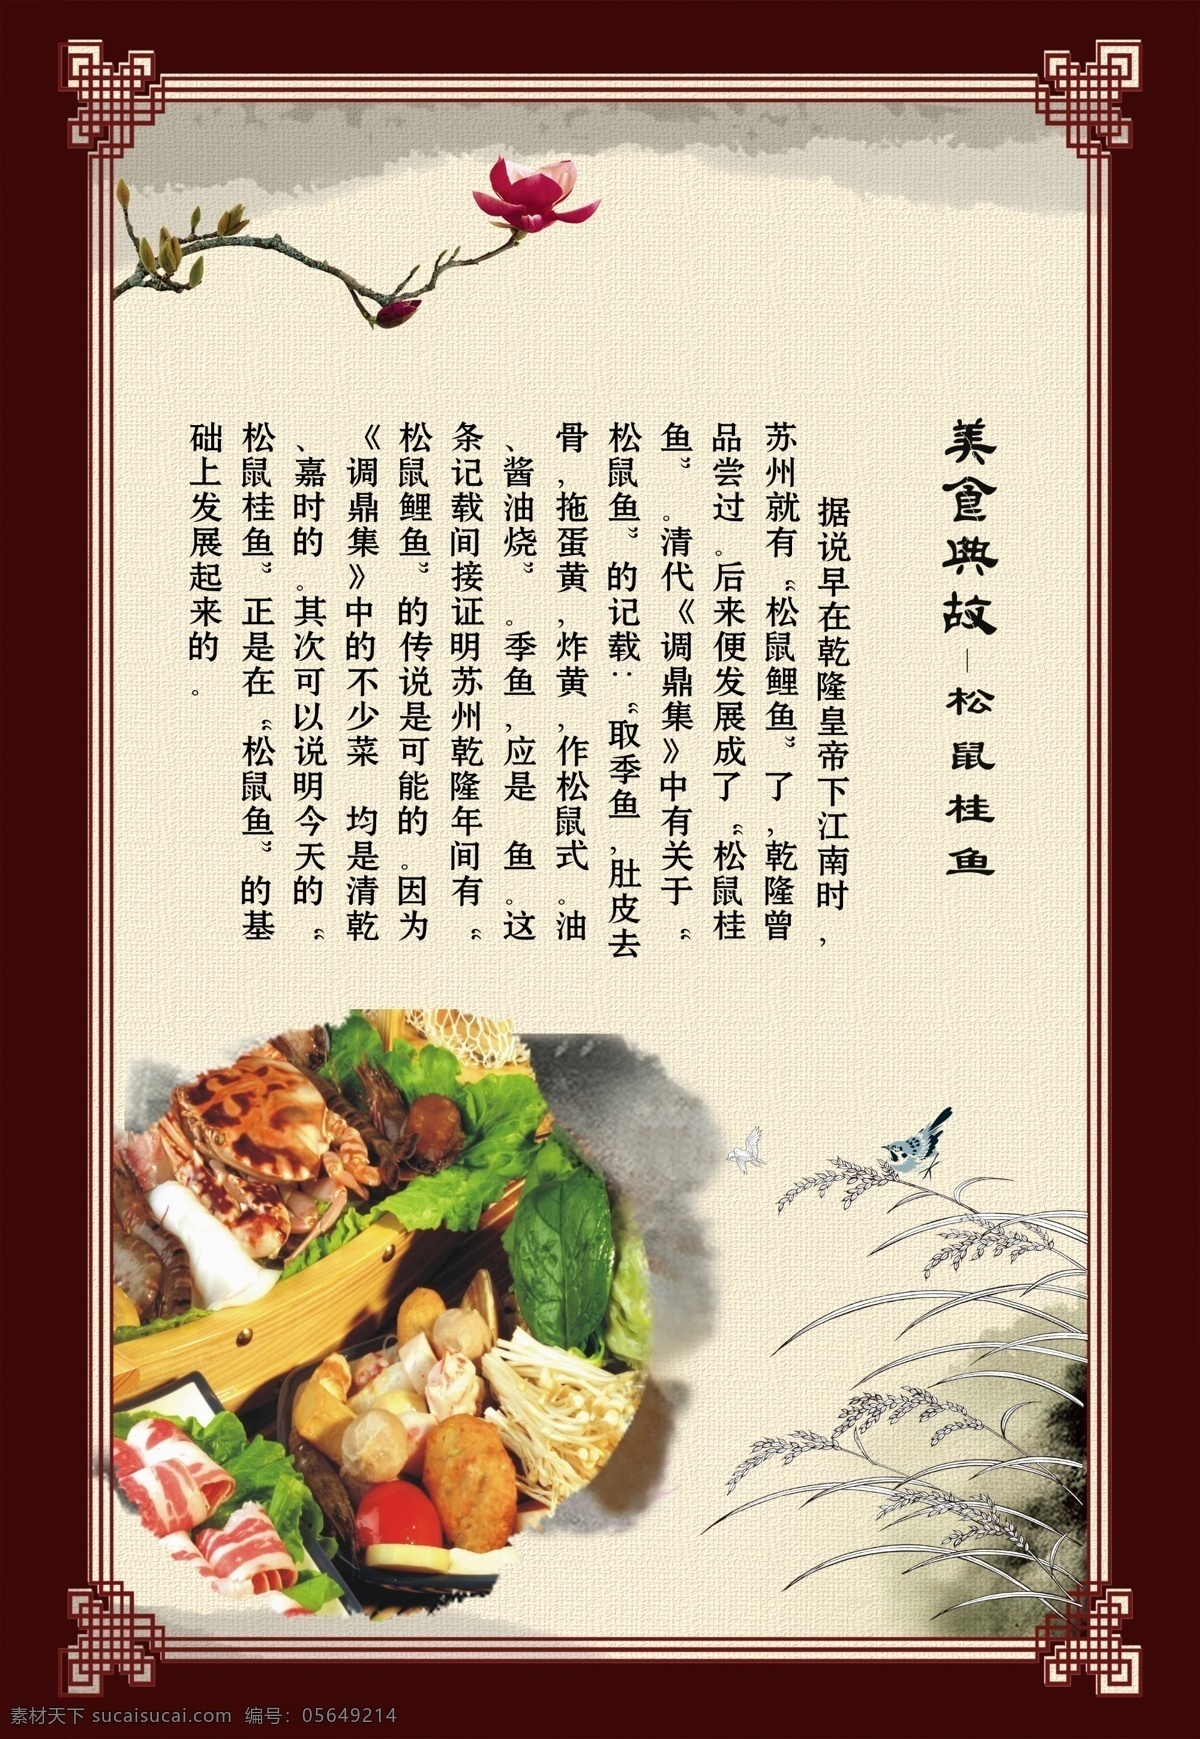 中国 风 美食 典故 松鼠 桂鱼 中国风 美食典故 松鼠鱼 松鼠桂鱼 鱼 中国风展板 美食展板 传统美食展板